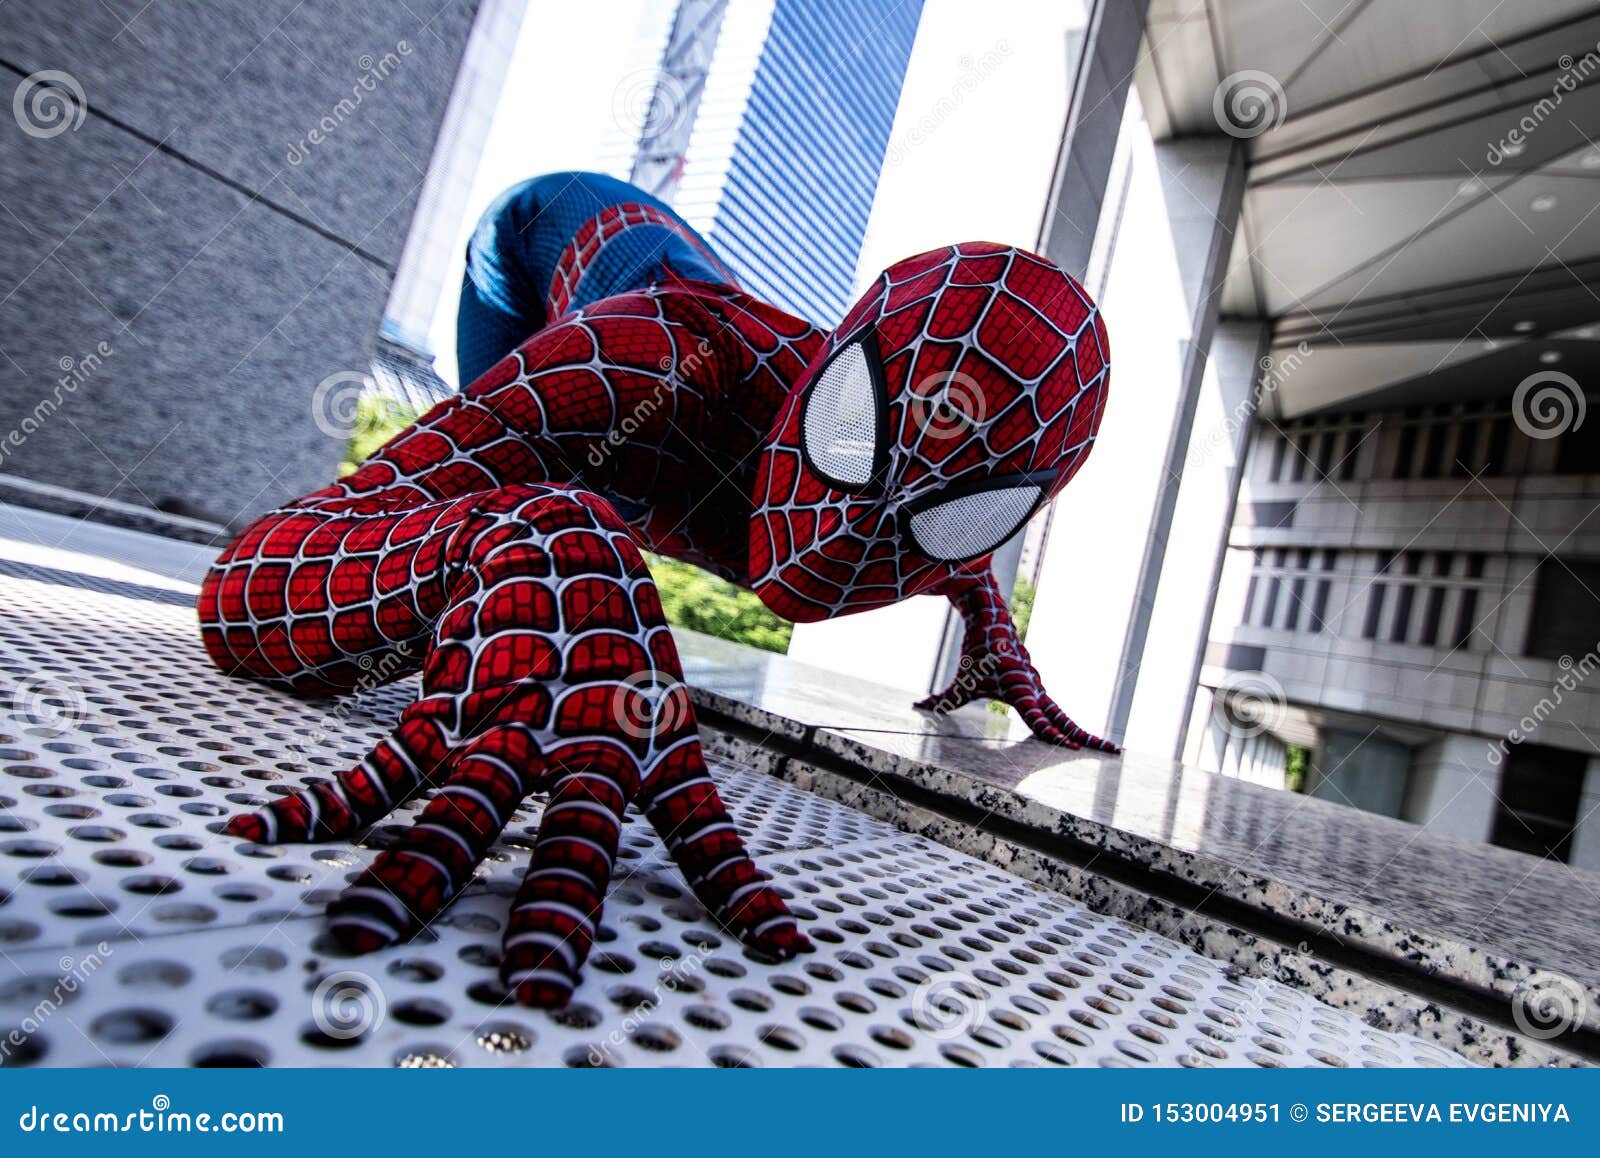 Tokyo, Japan - June 15, 2019: Man in Superhero Costume Comic ...